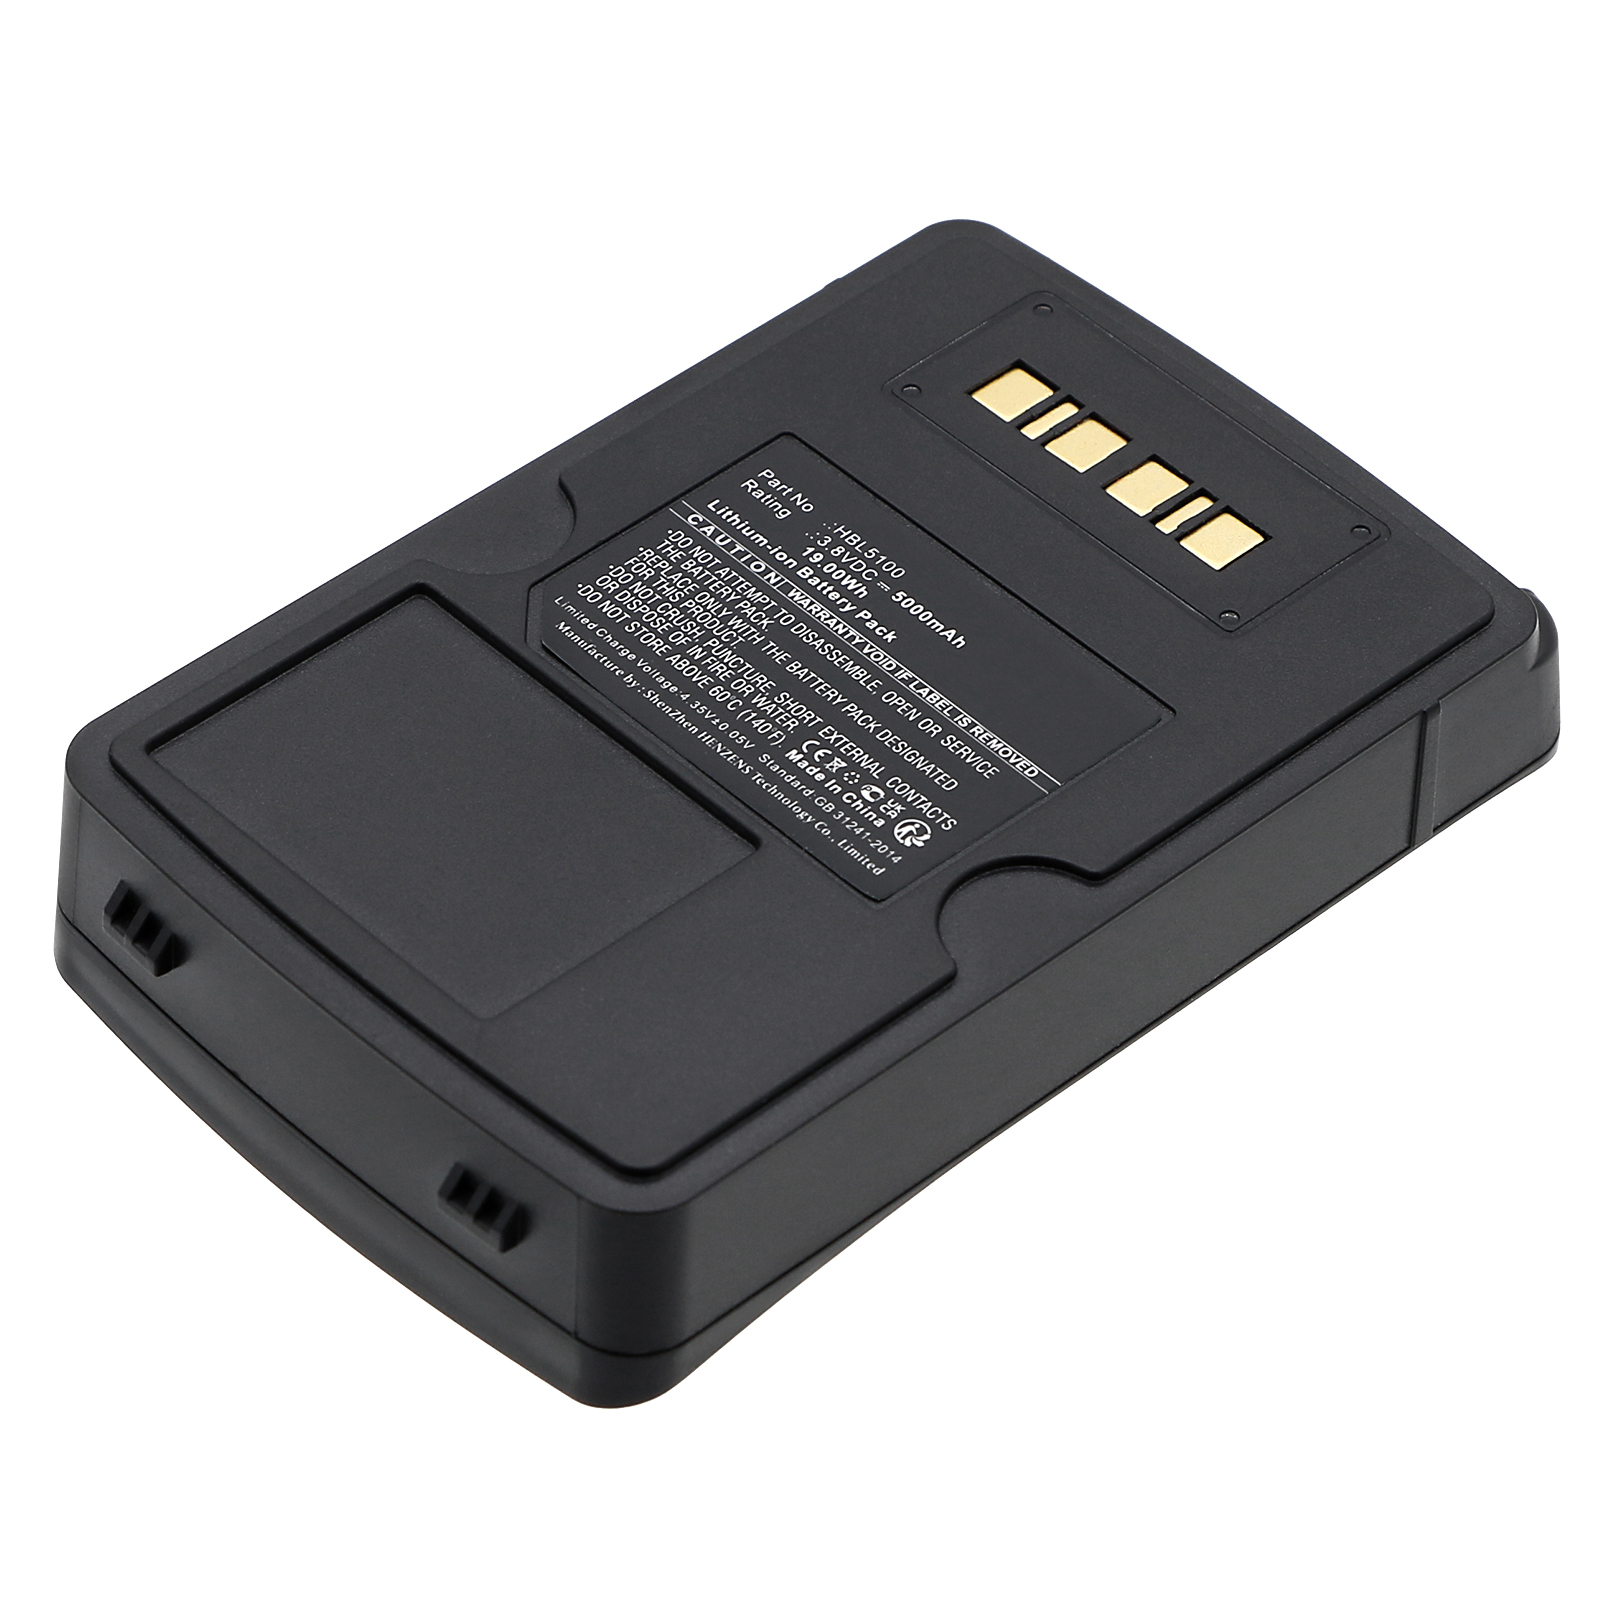 Synergy Digital Barcode Scanner Battery, Compatible with Urovo HBL5100 Barcode Scanner Battery (Li-ion, 3.8V, 5000mAh)